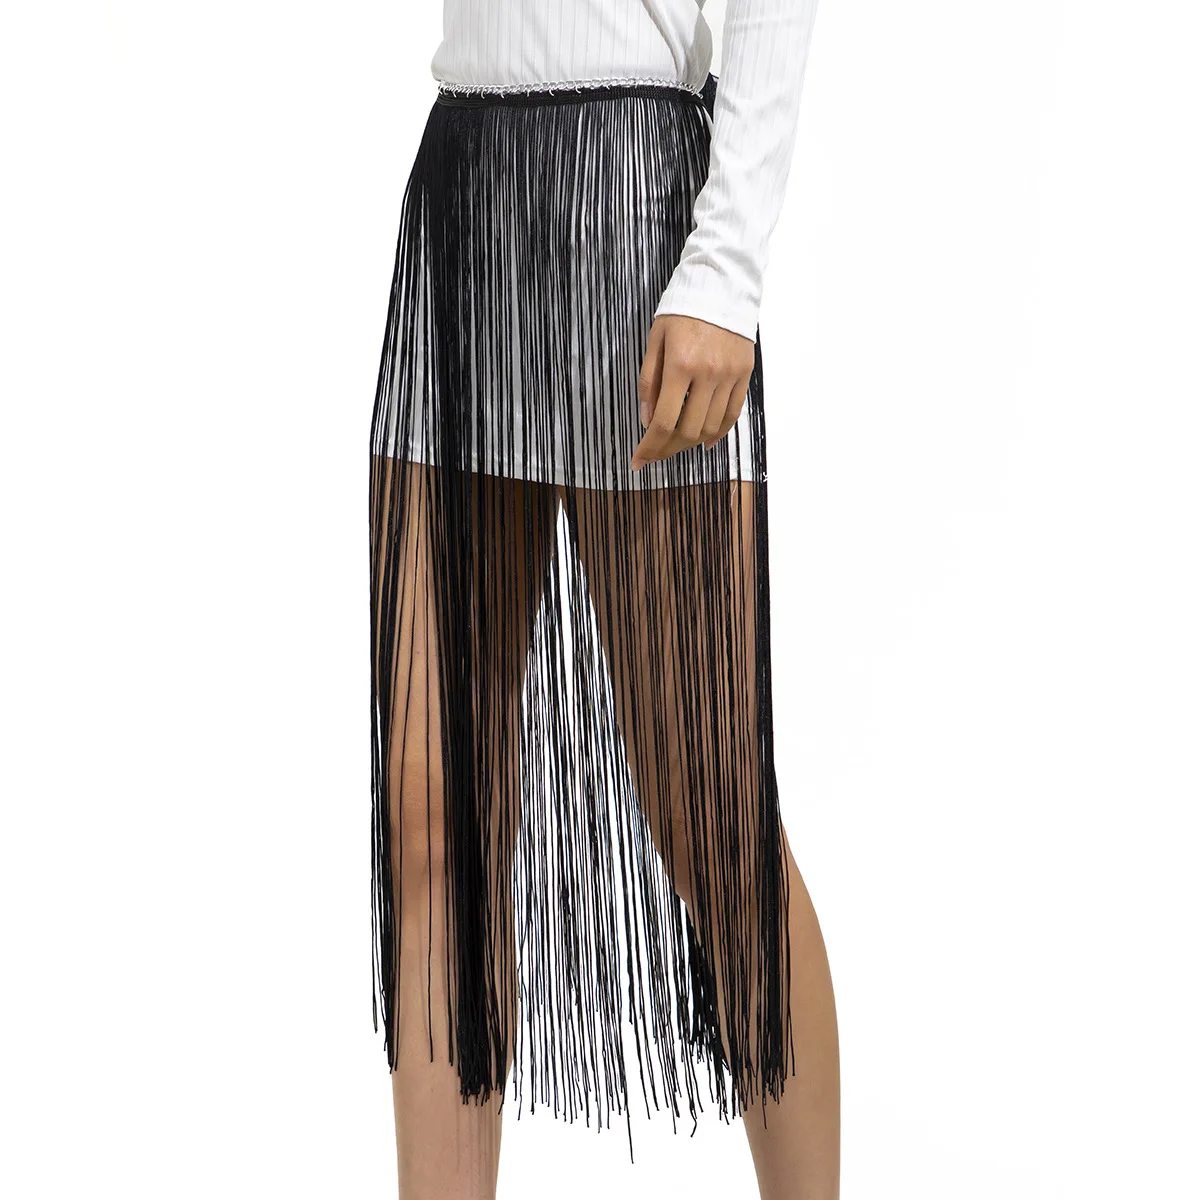 Super Long Tassel Waist Belt Black Wide Fringe Skirt Dress Waistband 2022 Designer fashion Summer Street Waist Chain Belt Women